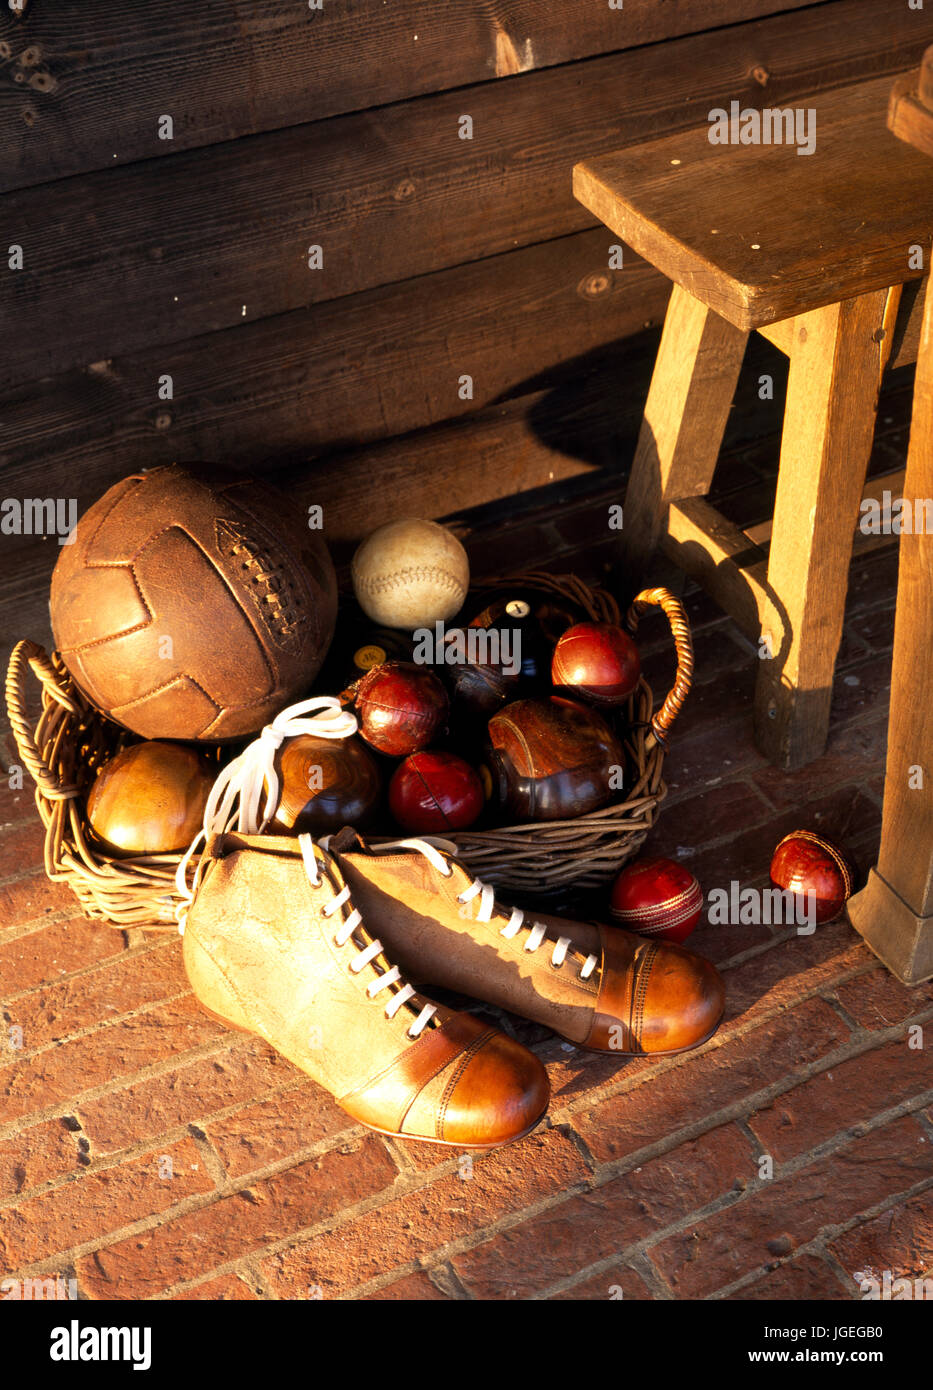 Retro football kit and cricket balls Stock Photo